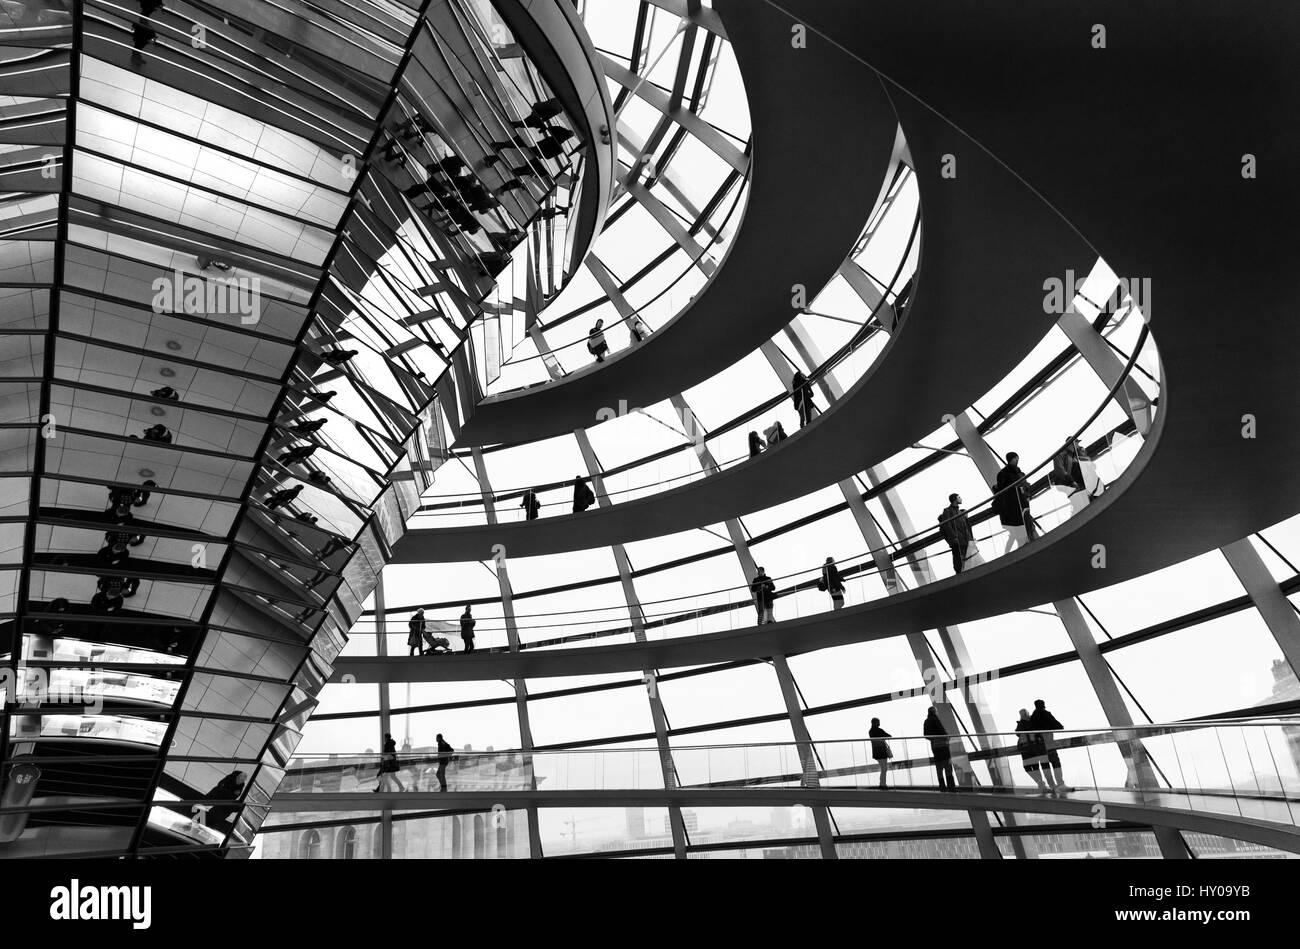 Berlino, Germania - 19 Febbraio 2017: Deutscher Bundestag tedesco moderno parlamento cupola di vetro con le persone intorno a godersi il paesaggio. Foto Stock